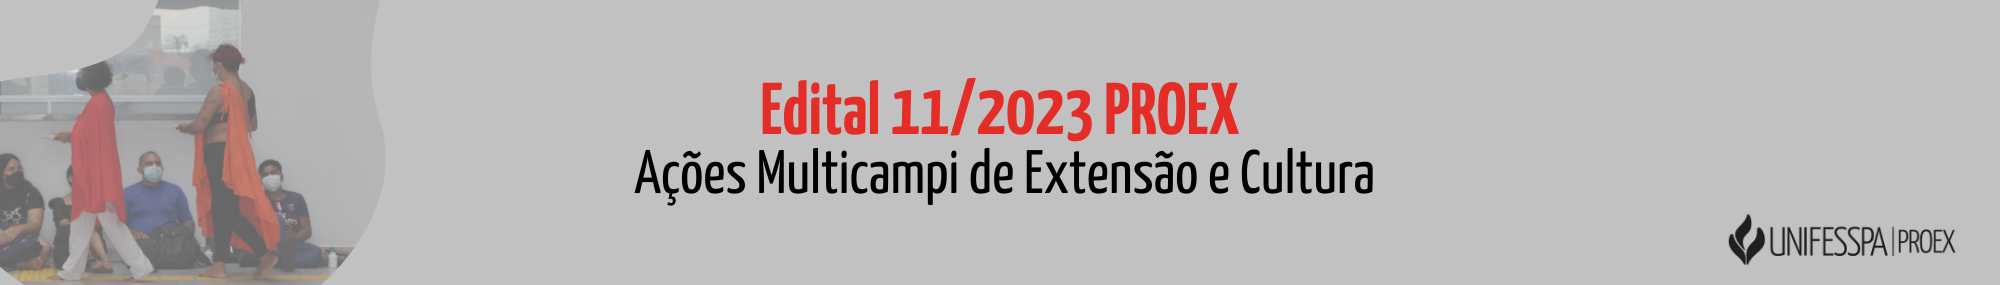 _e-mail -açoes multicampi 2023.png